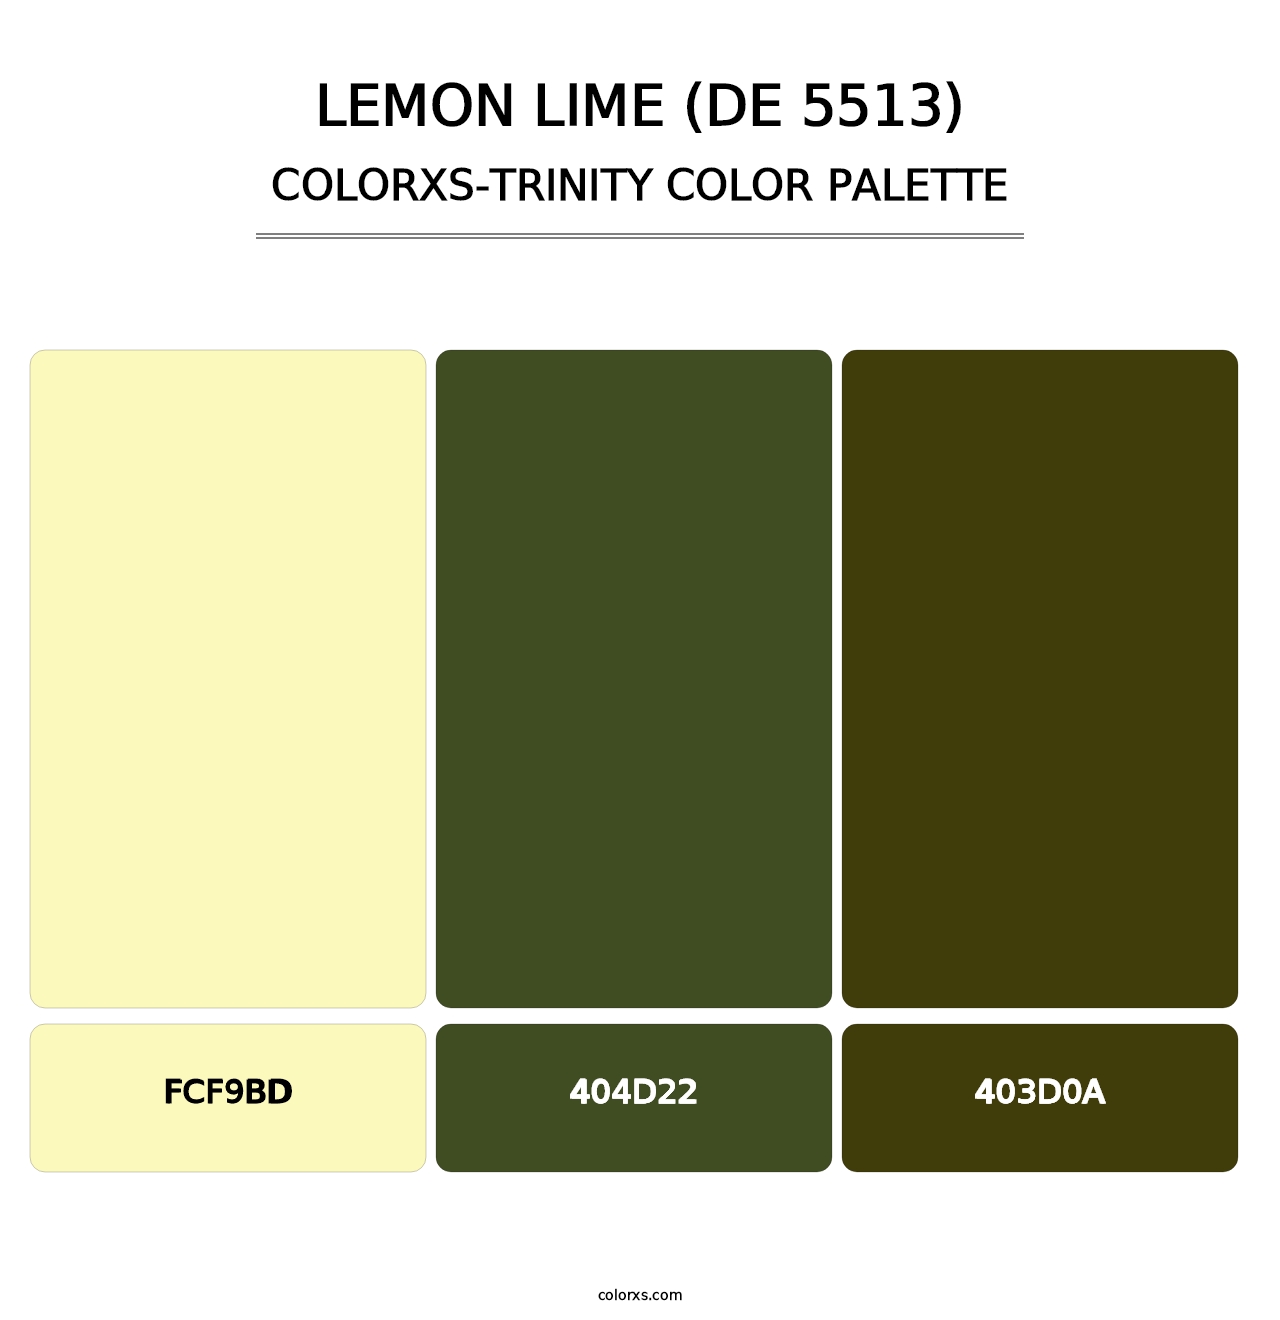 Lemon Lime (DE 5513) - Colorxs Trinity Palette